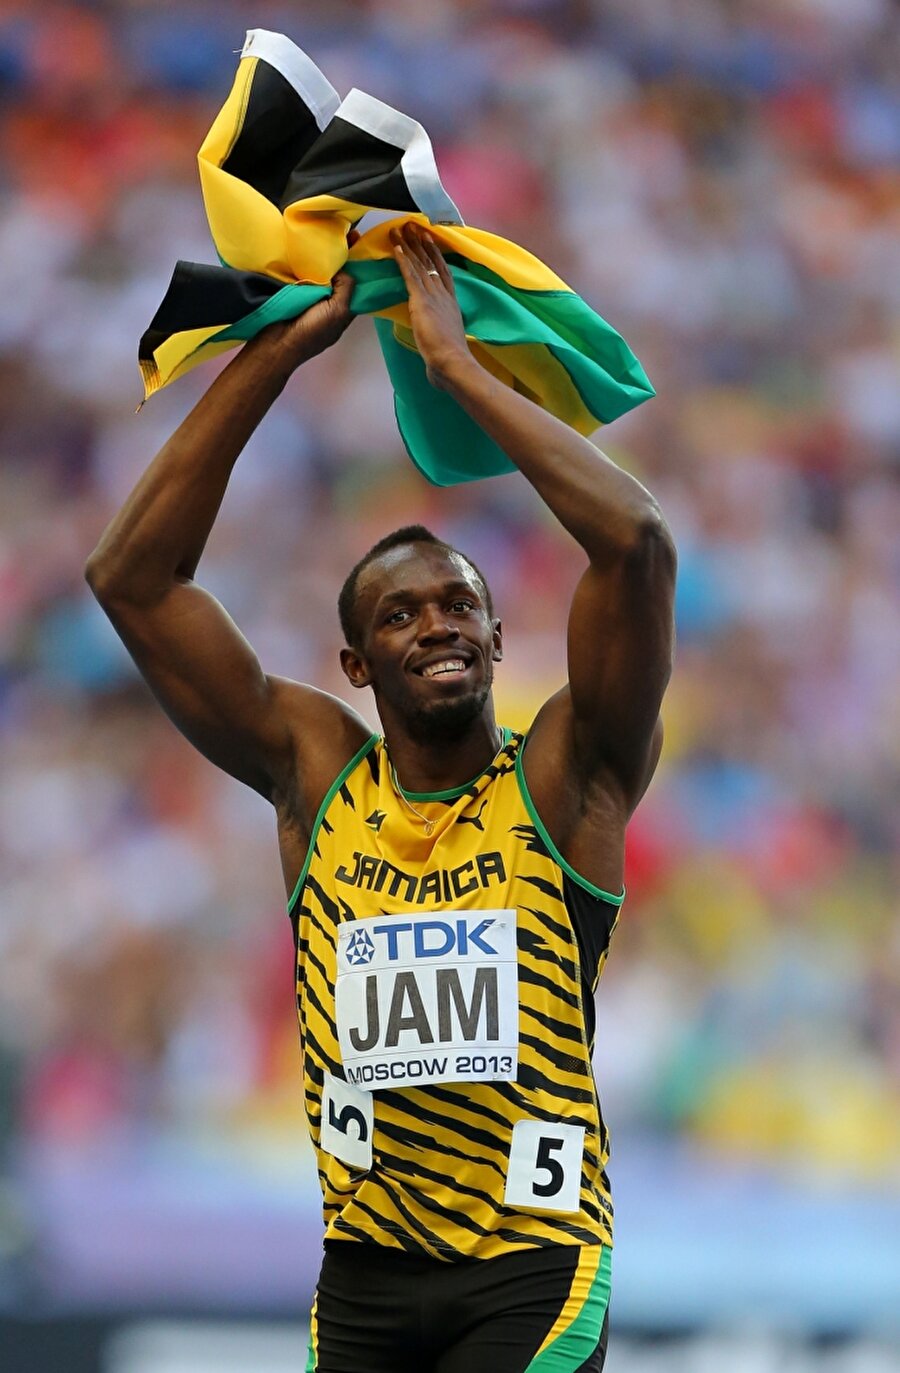 Rekor kırdı

                                    
                                    
                                    
                                    Bolt, 2003'te ise 19,93 ile halen geçerli olan dünya gençler rekorunu kırdı. 
                                
                                
                                
                                